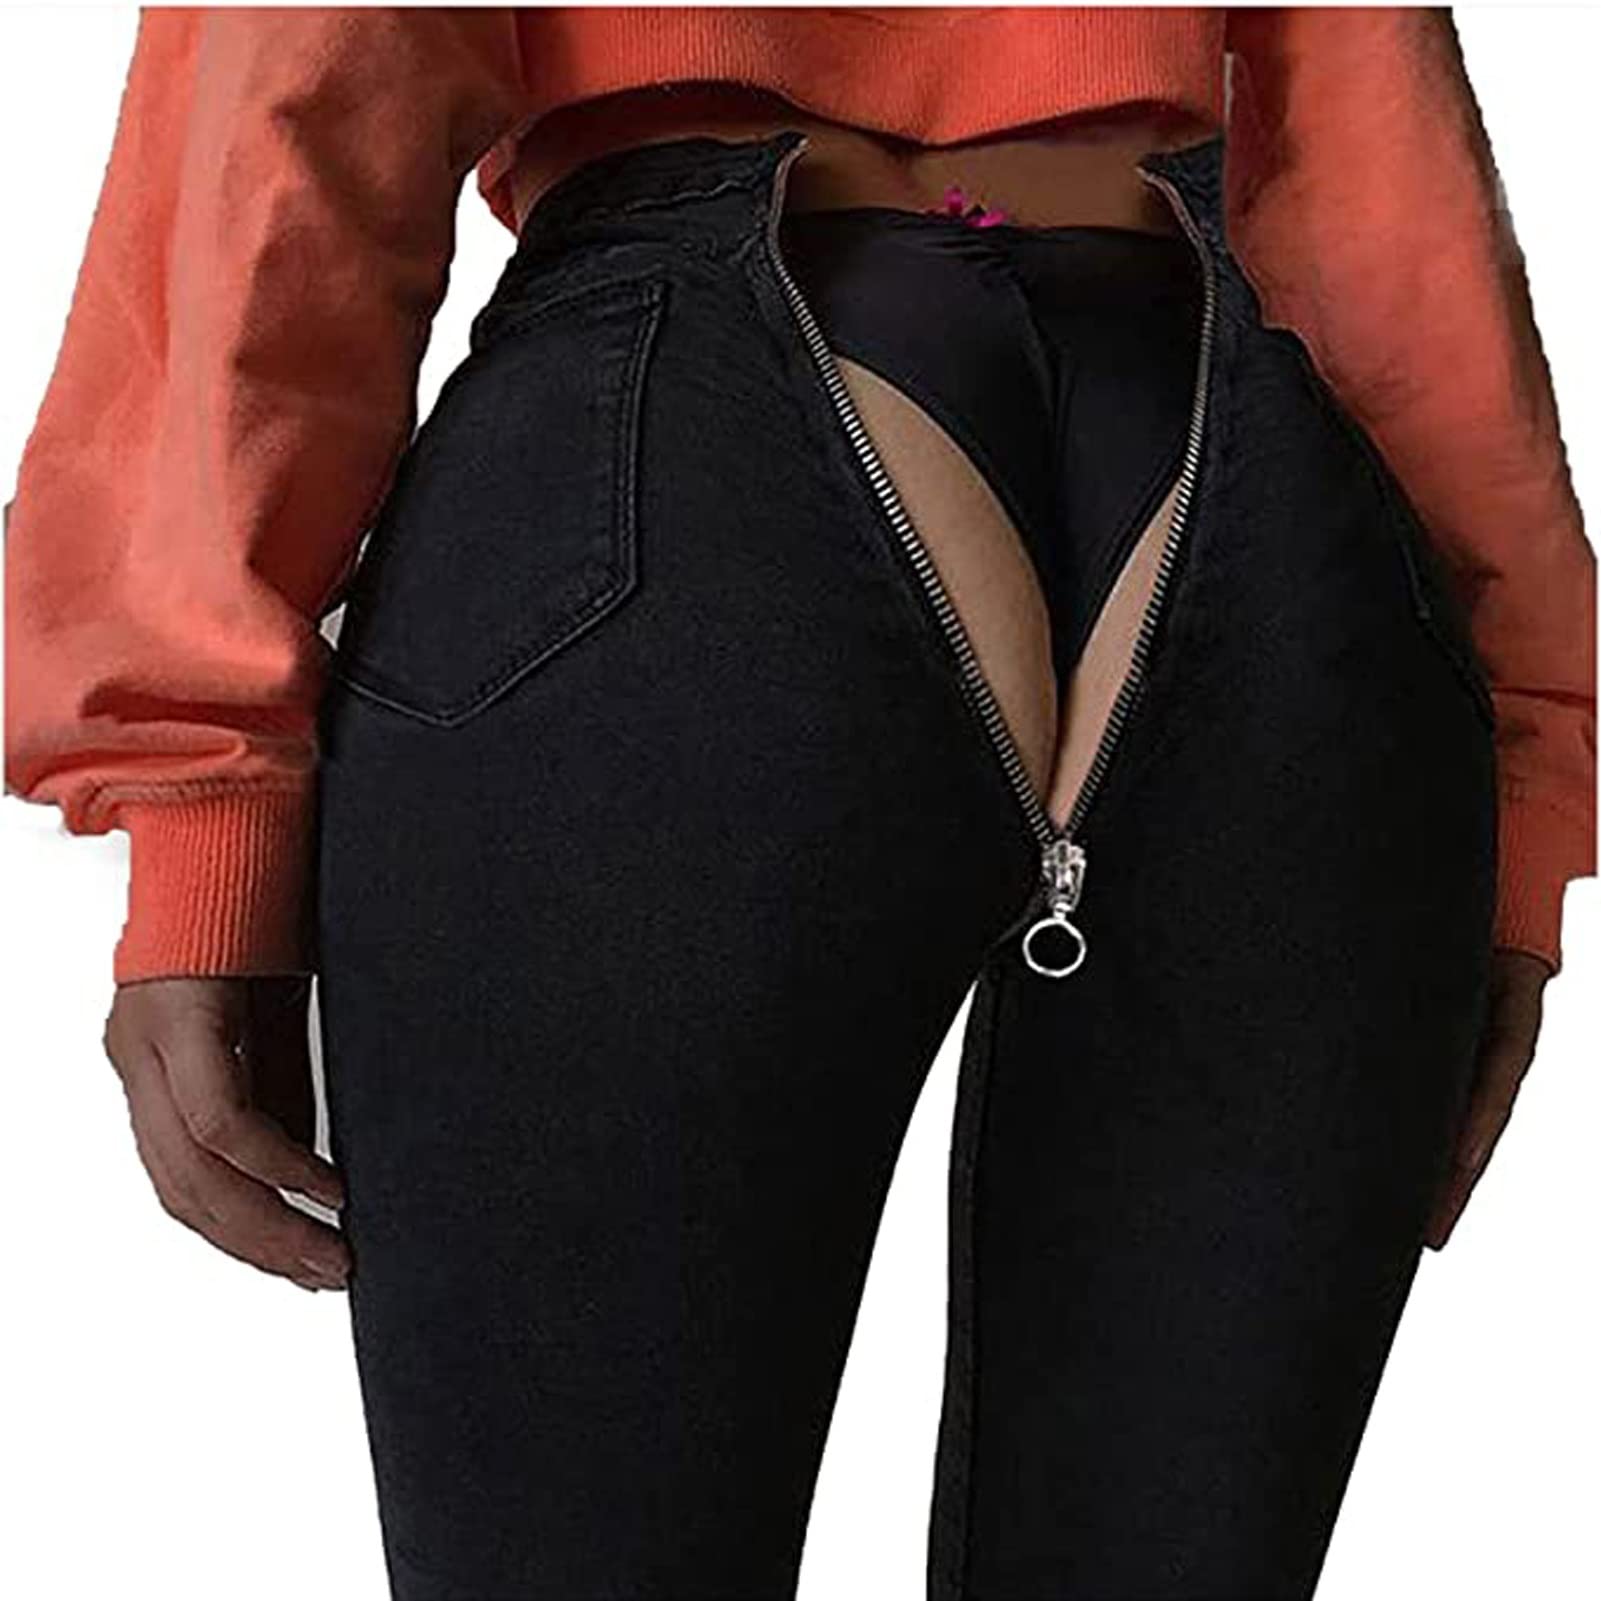 Yokbeer Sexy Damen-Jeans mit Reißverschluss Hinten, Jeans mit Hoher Taille und Reißverschluss Hinten, Dehnbare Legging-Hose aus Gewaschener, Dünne Hose (Color : Black, Size : XXL)